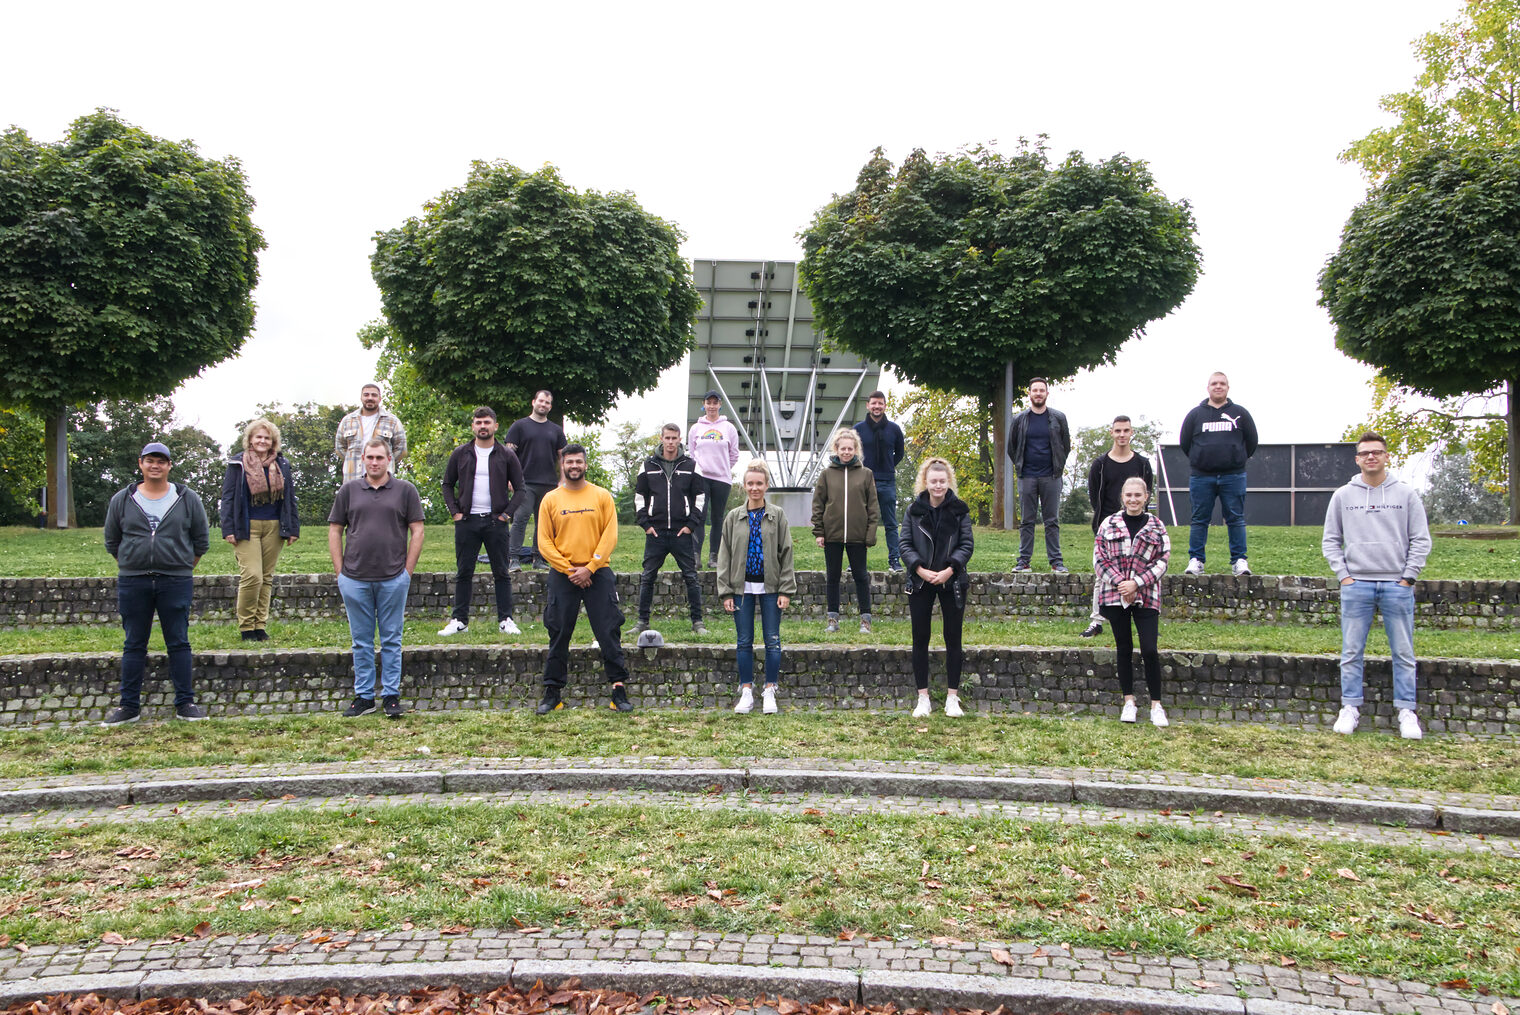 Gruppenbild von Teilnehmern der Meisterkurse vor dem Haupteingang der Bildungsakademie Mannheim